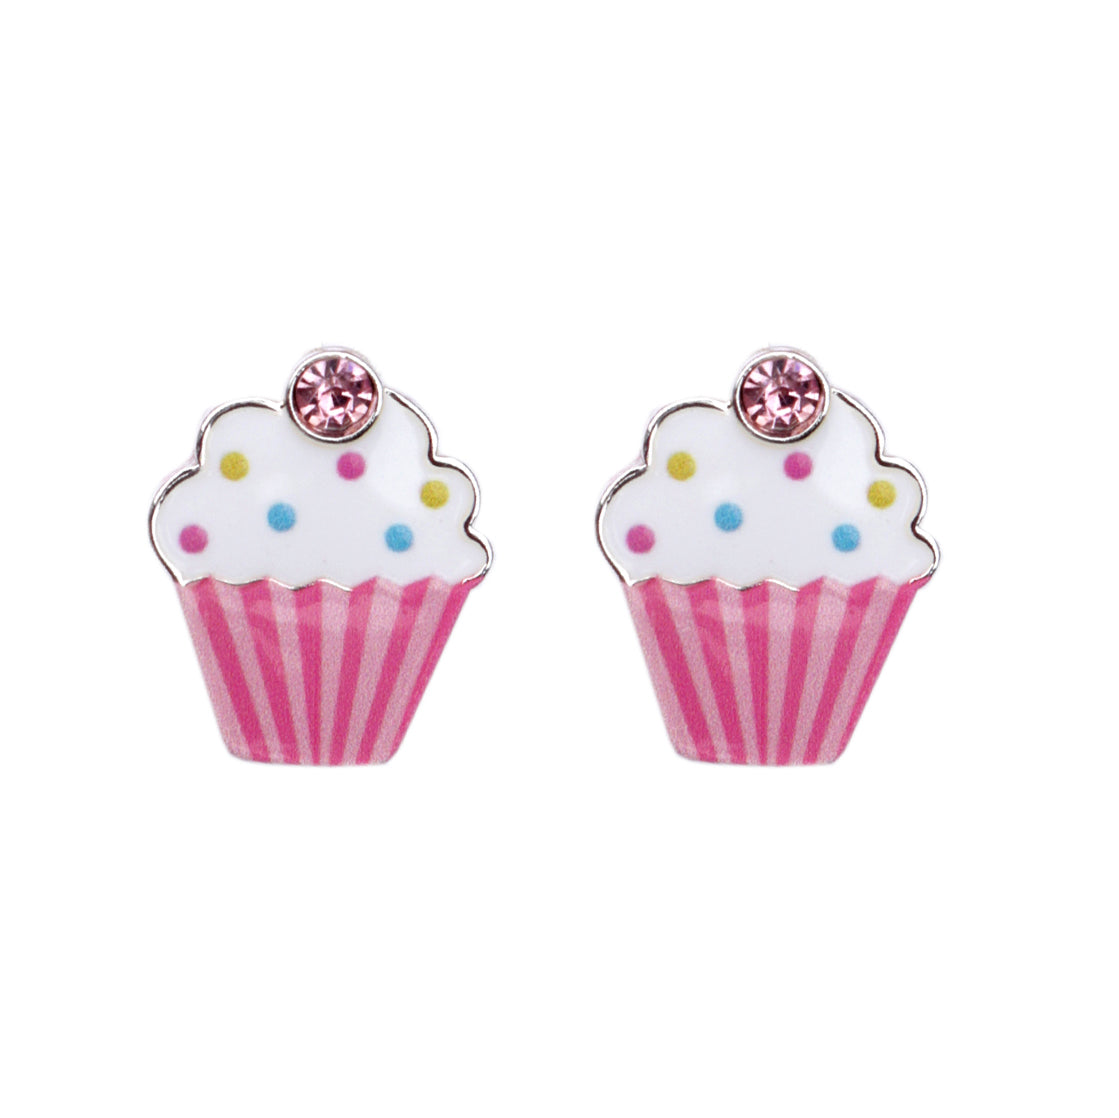 Lauren Hinkley | Cupcake Earrings